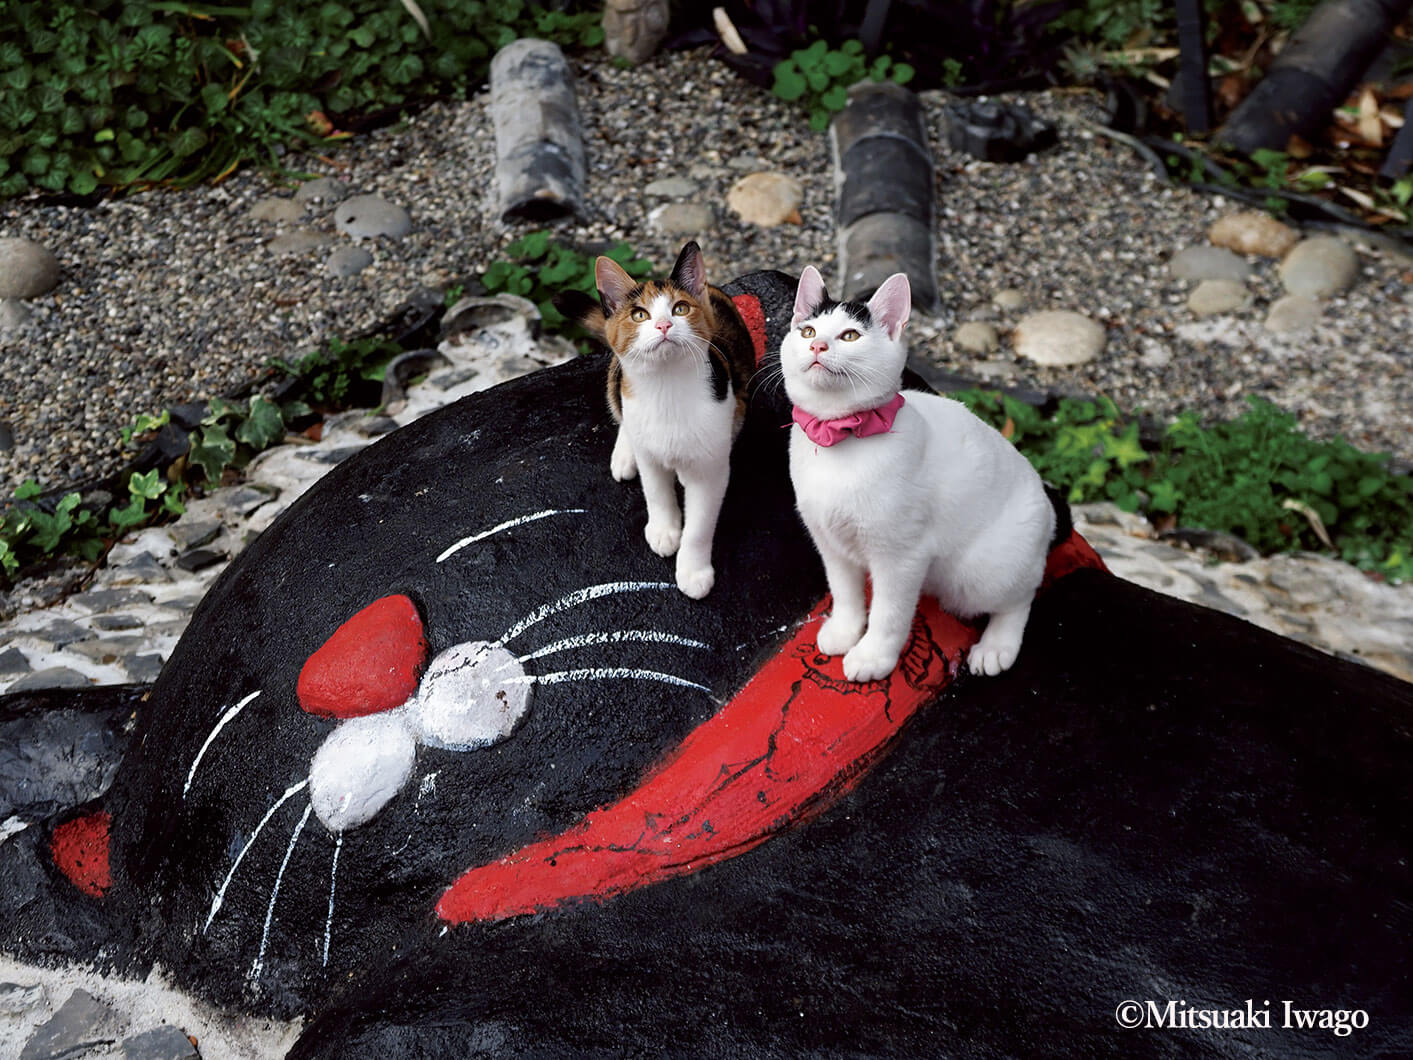 広島県尾道市で撮影された猫の写真 by 『岩合光昭の日本ねこ歩き』